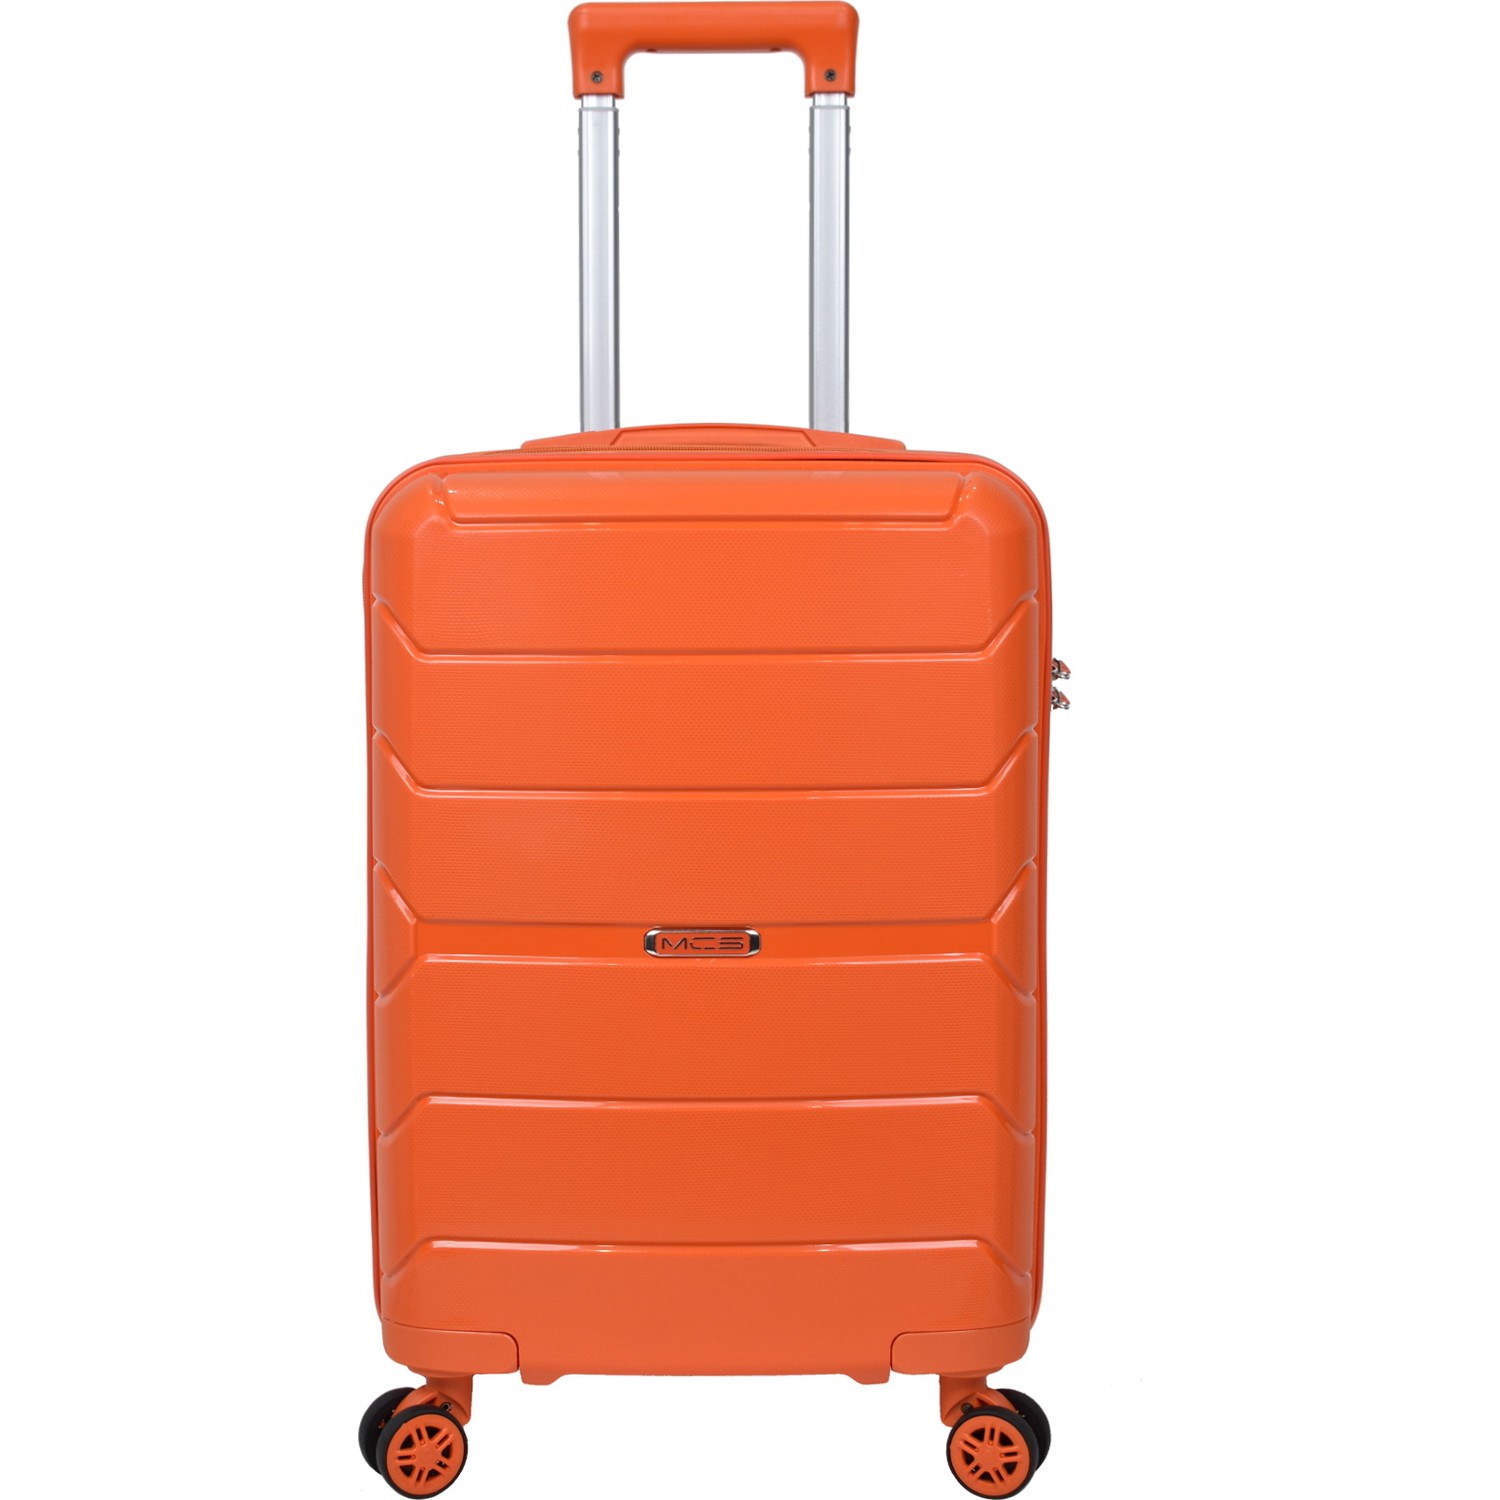 Маленький чемодан для ручьной клади из полипропилена MCS V366 S ORANGE Для 8-10 кг! - 1